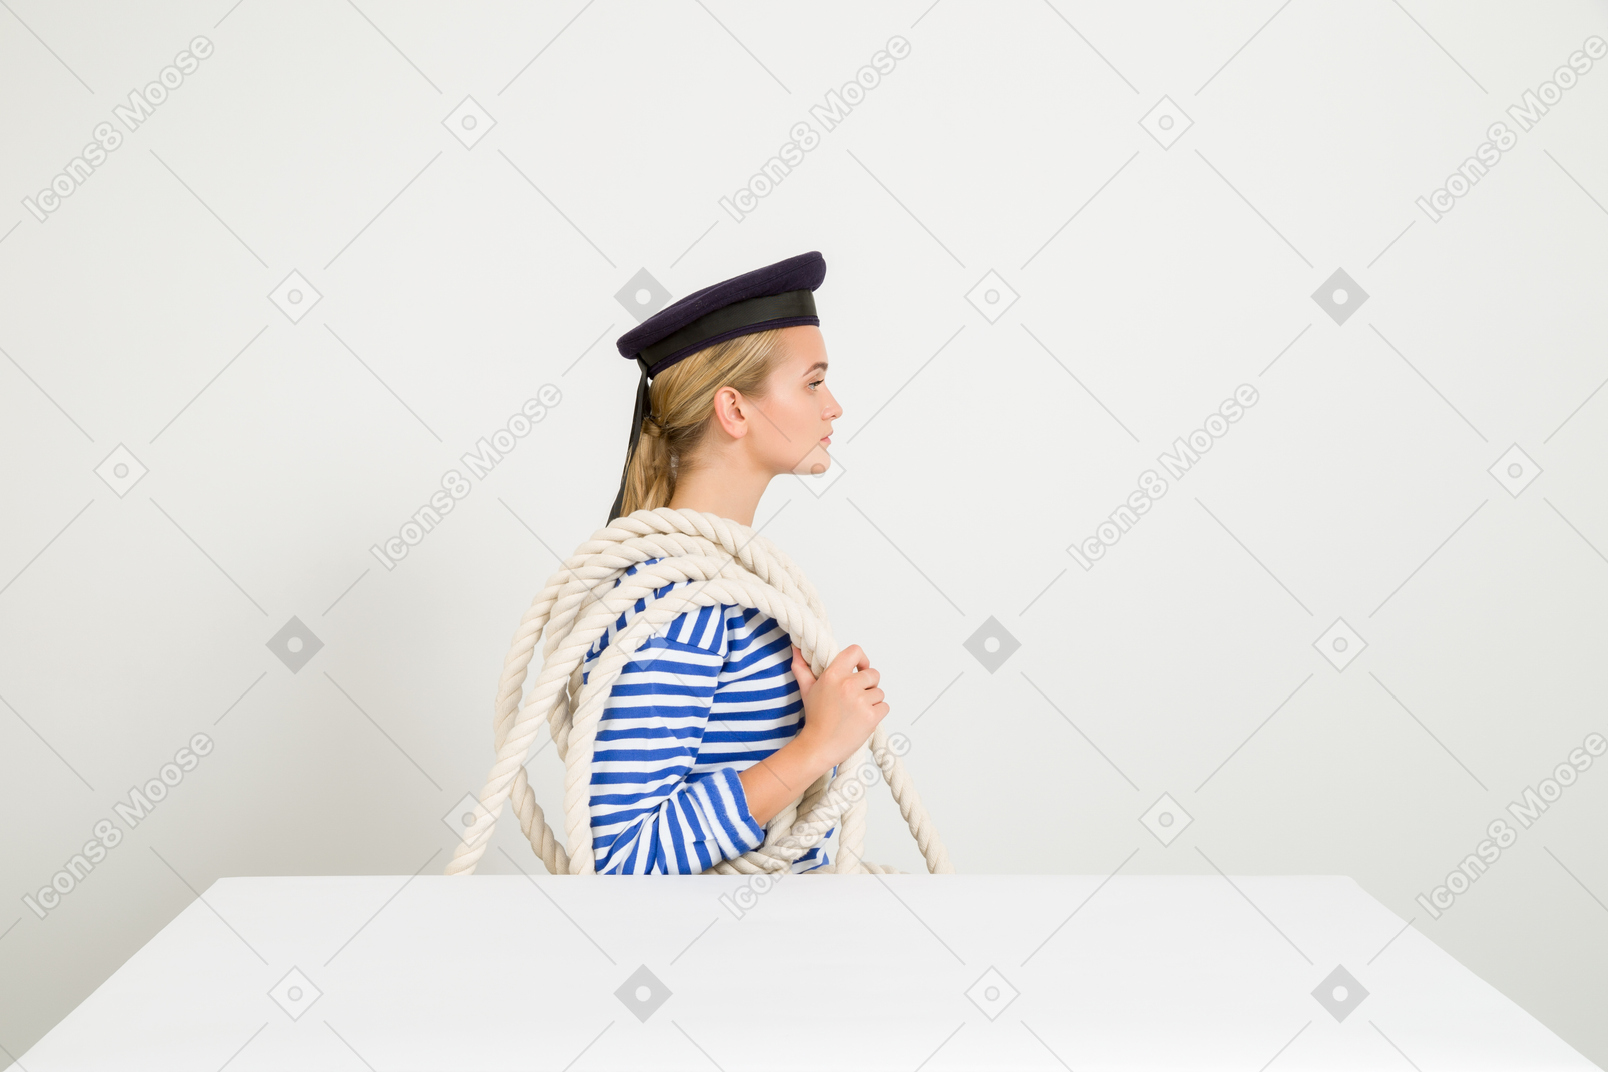 Marin femme assis de profil avec une corde sur l'épaule